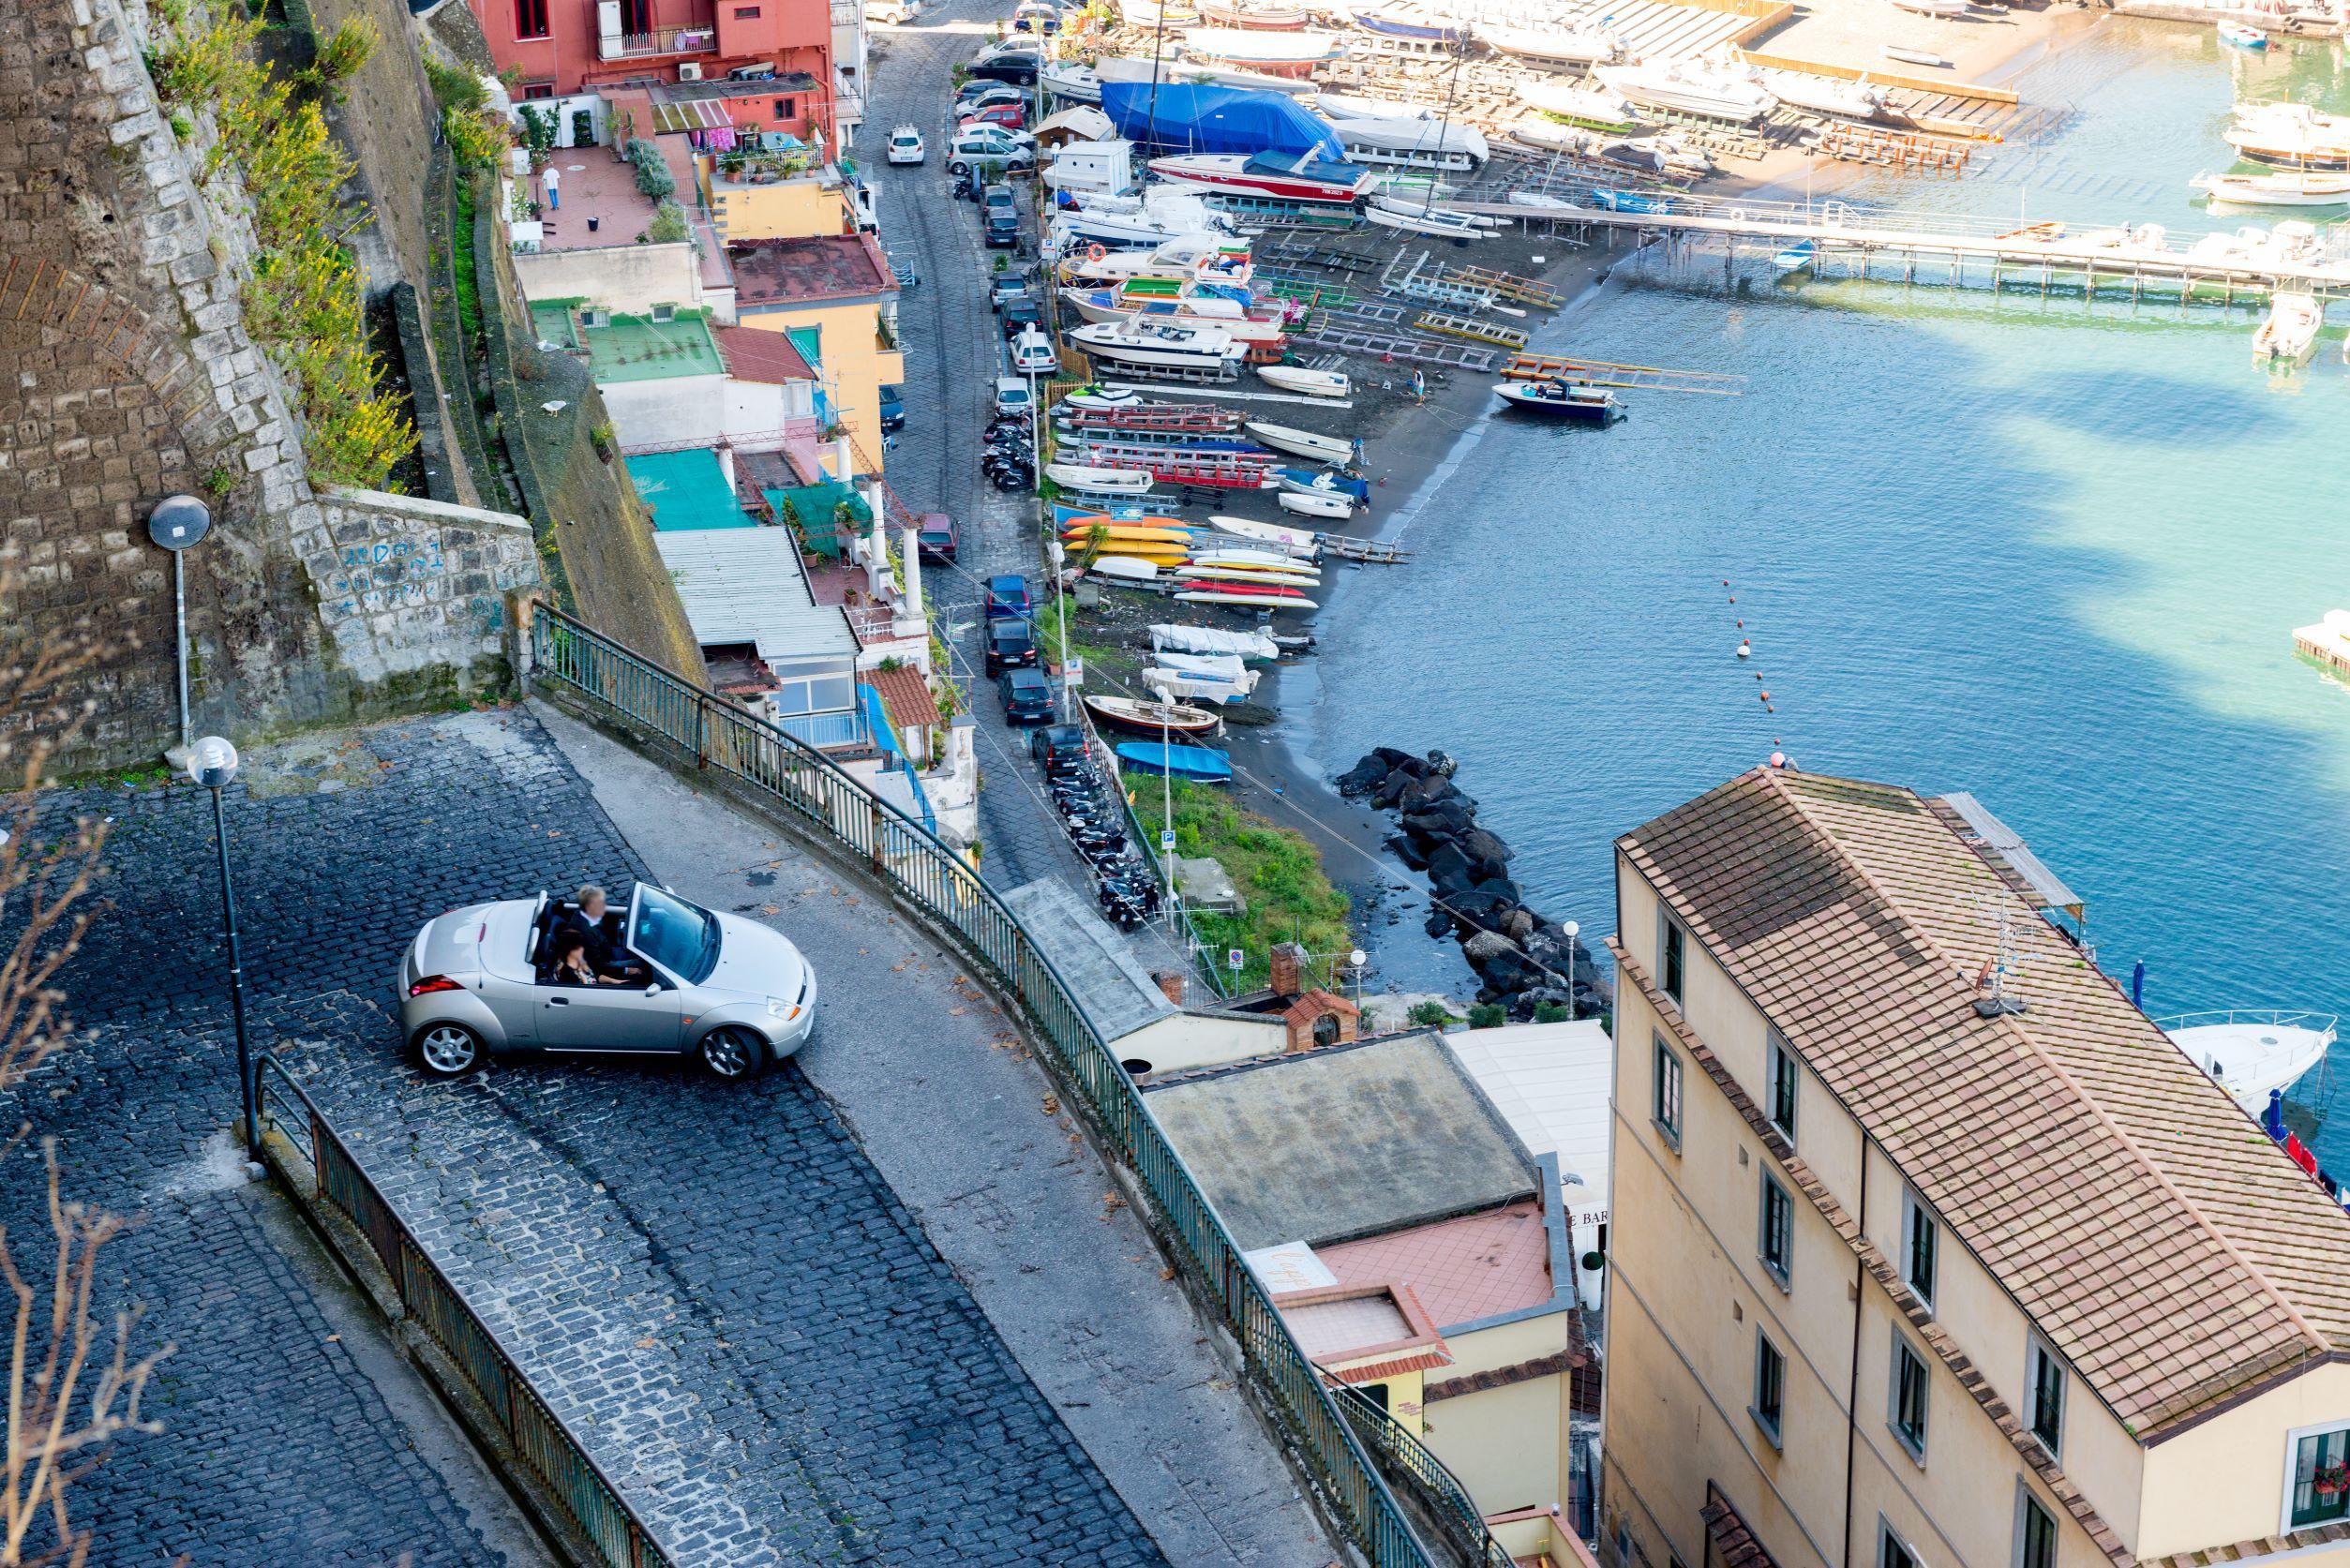 Drága mulatság bérelt autóval kocsikázni Olaszországban